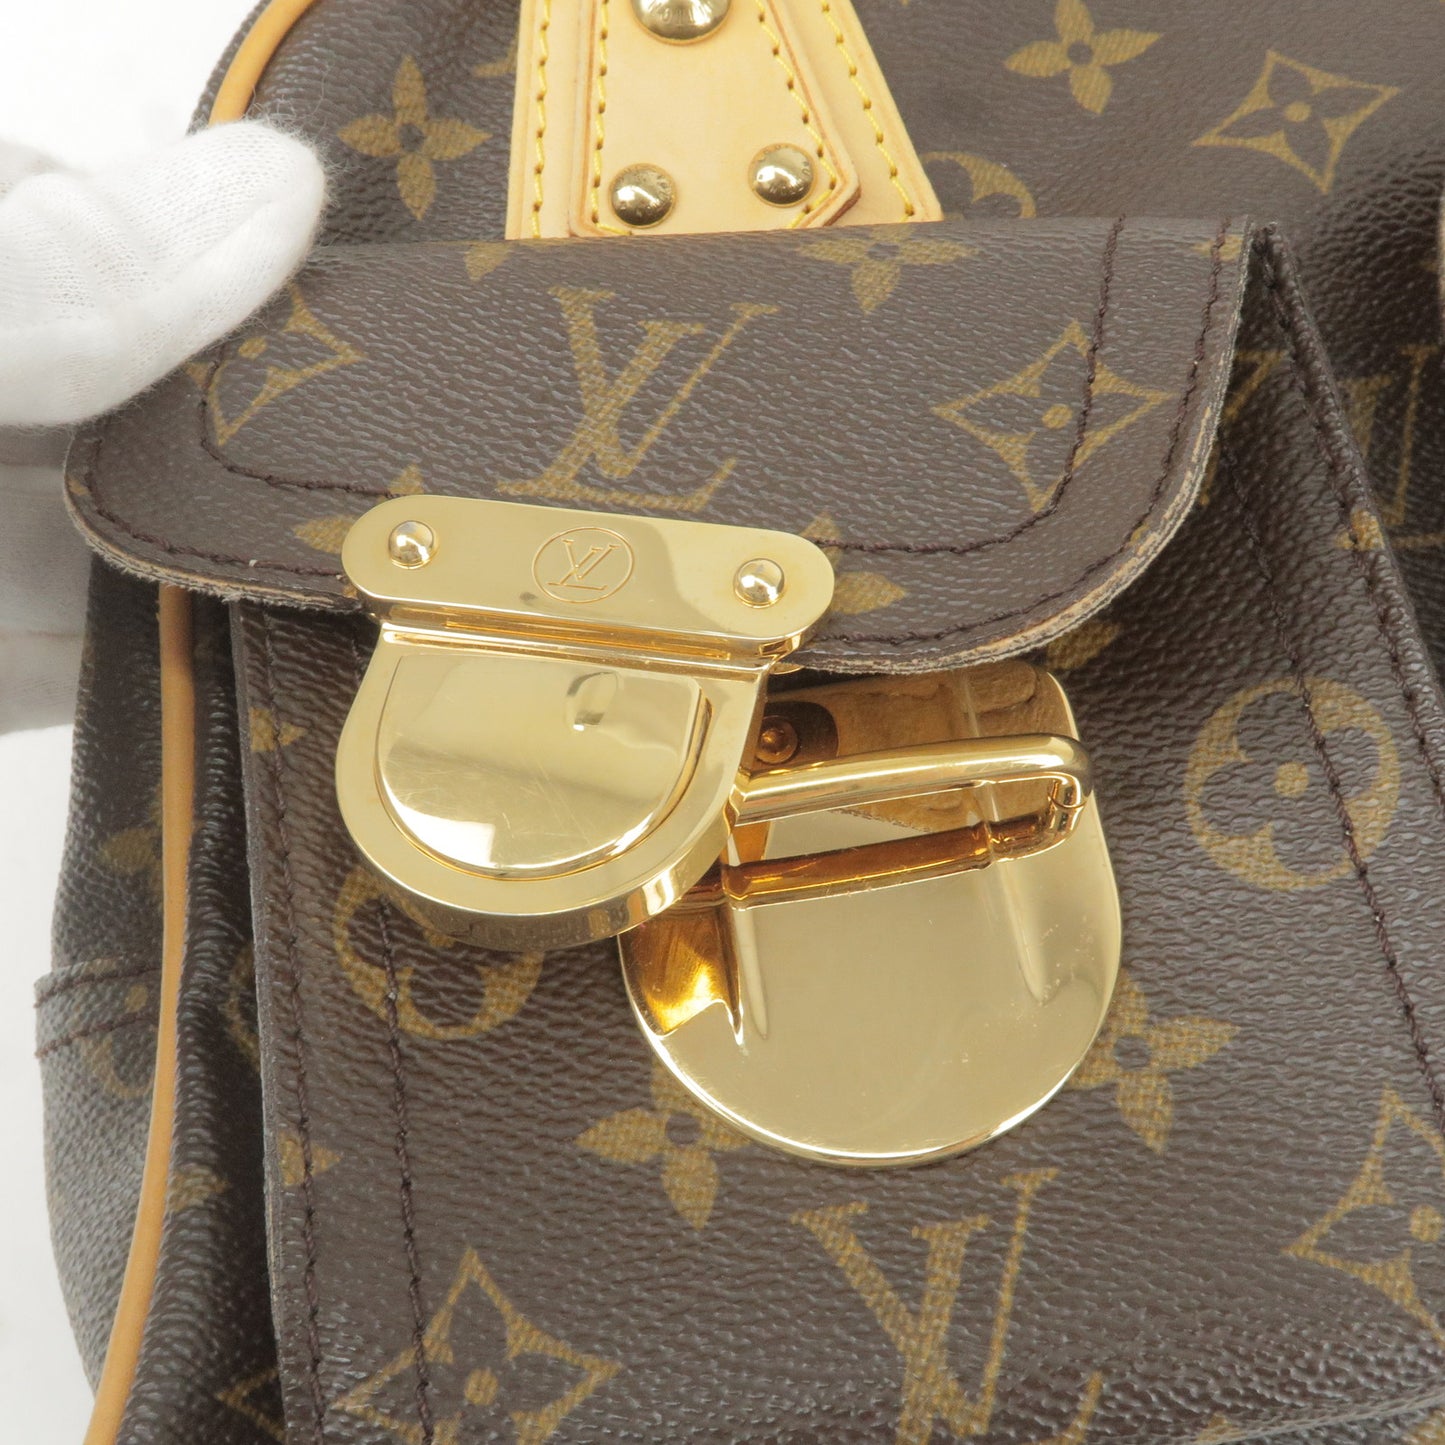 Louis Vuitton Monogram Manhattan PM Hand Bag M40026